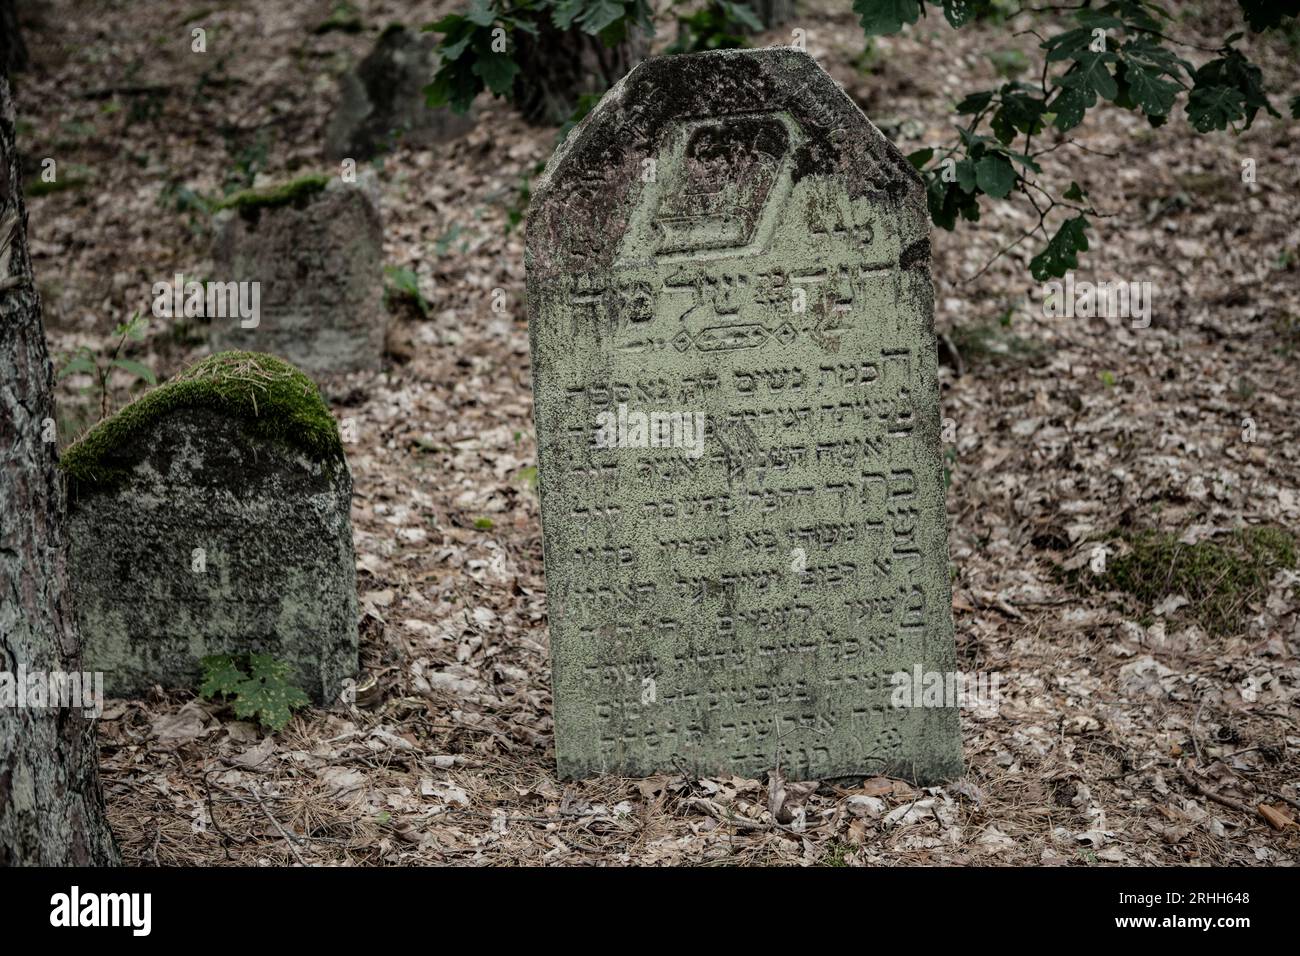 In Merkinė, einer kleinen Stadt in Litauen, gibt es einen alten jüdischen Friedhof, der tief im Wald versteckt liegt. Dieser Friedhof dient als stille Banque D'Images